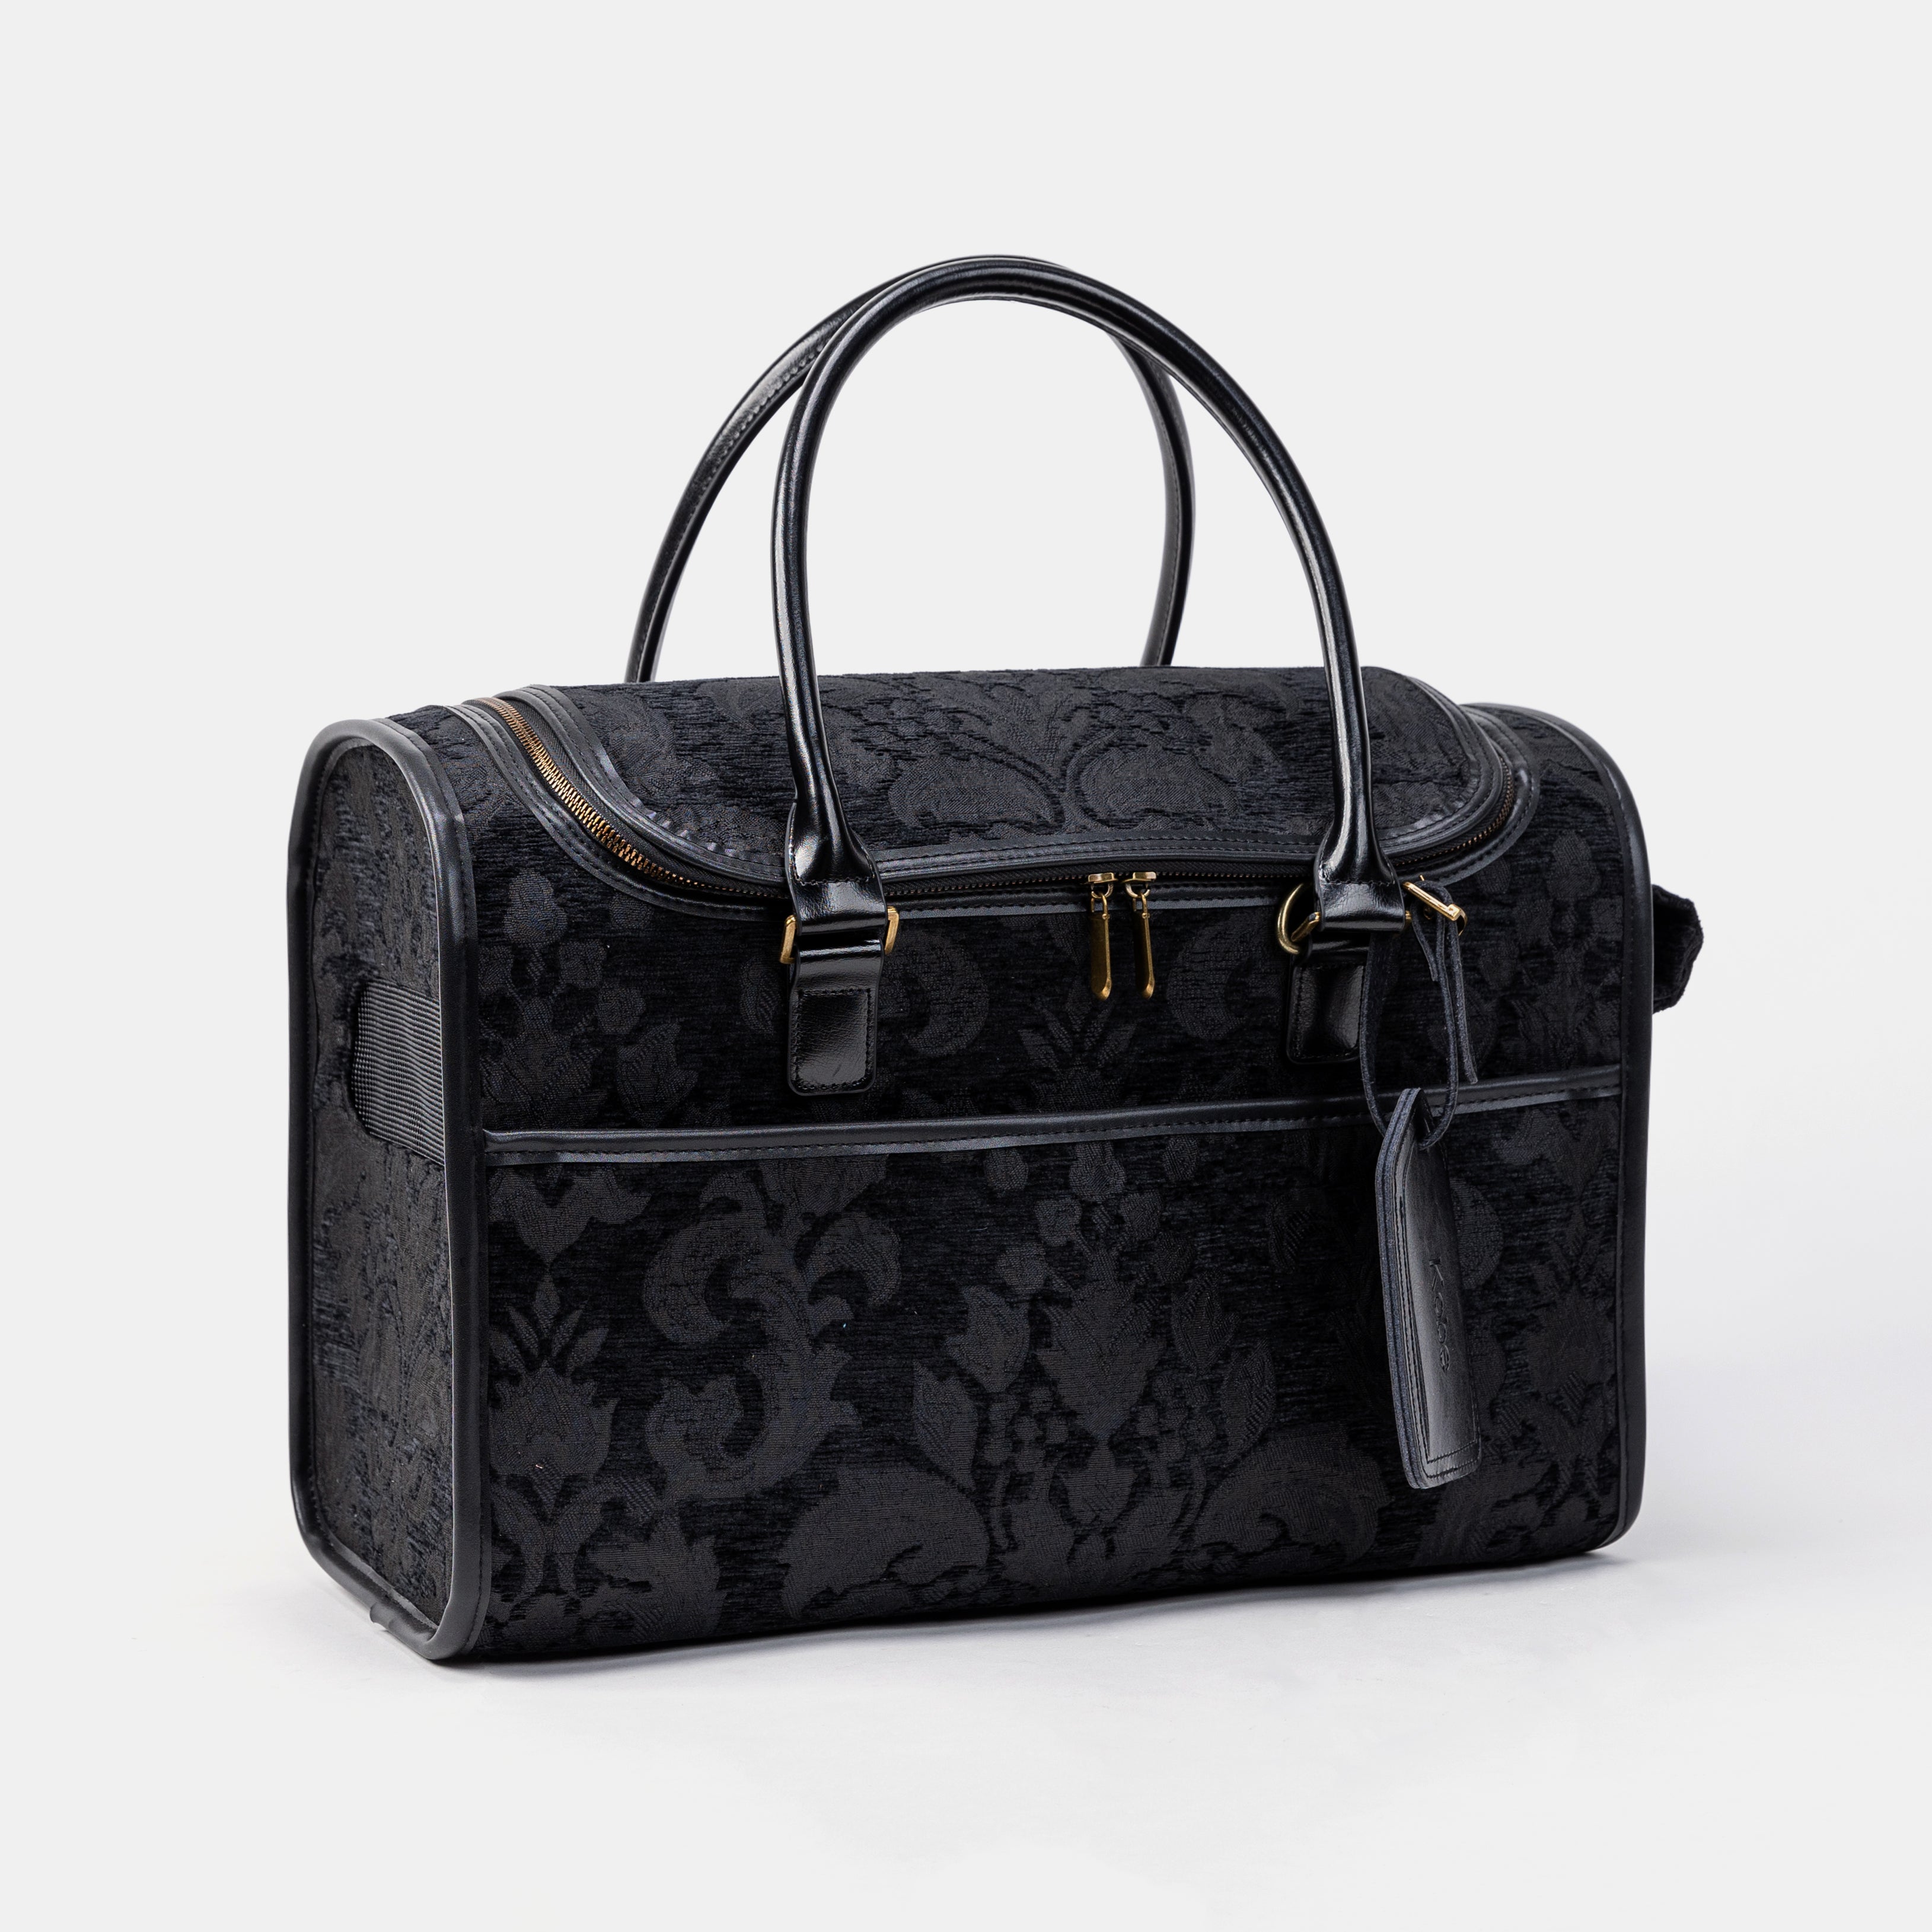 Travel Dog Carrier Bag Victorian Blossom Black Overview